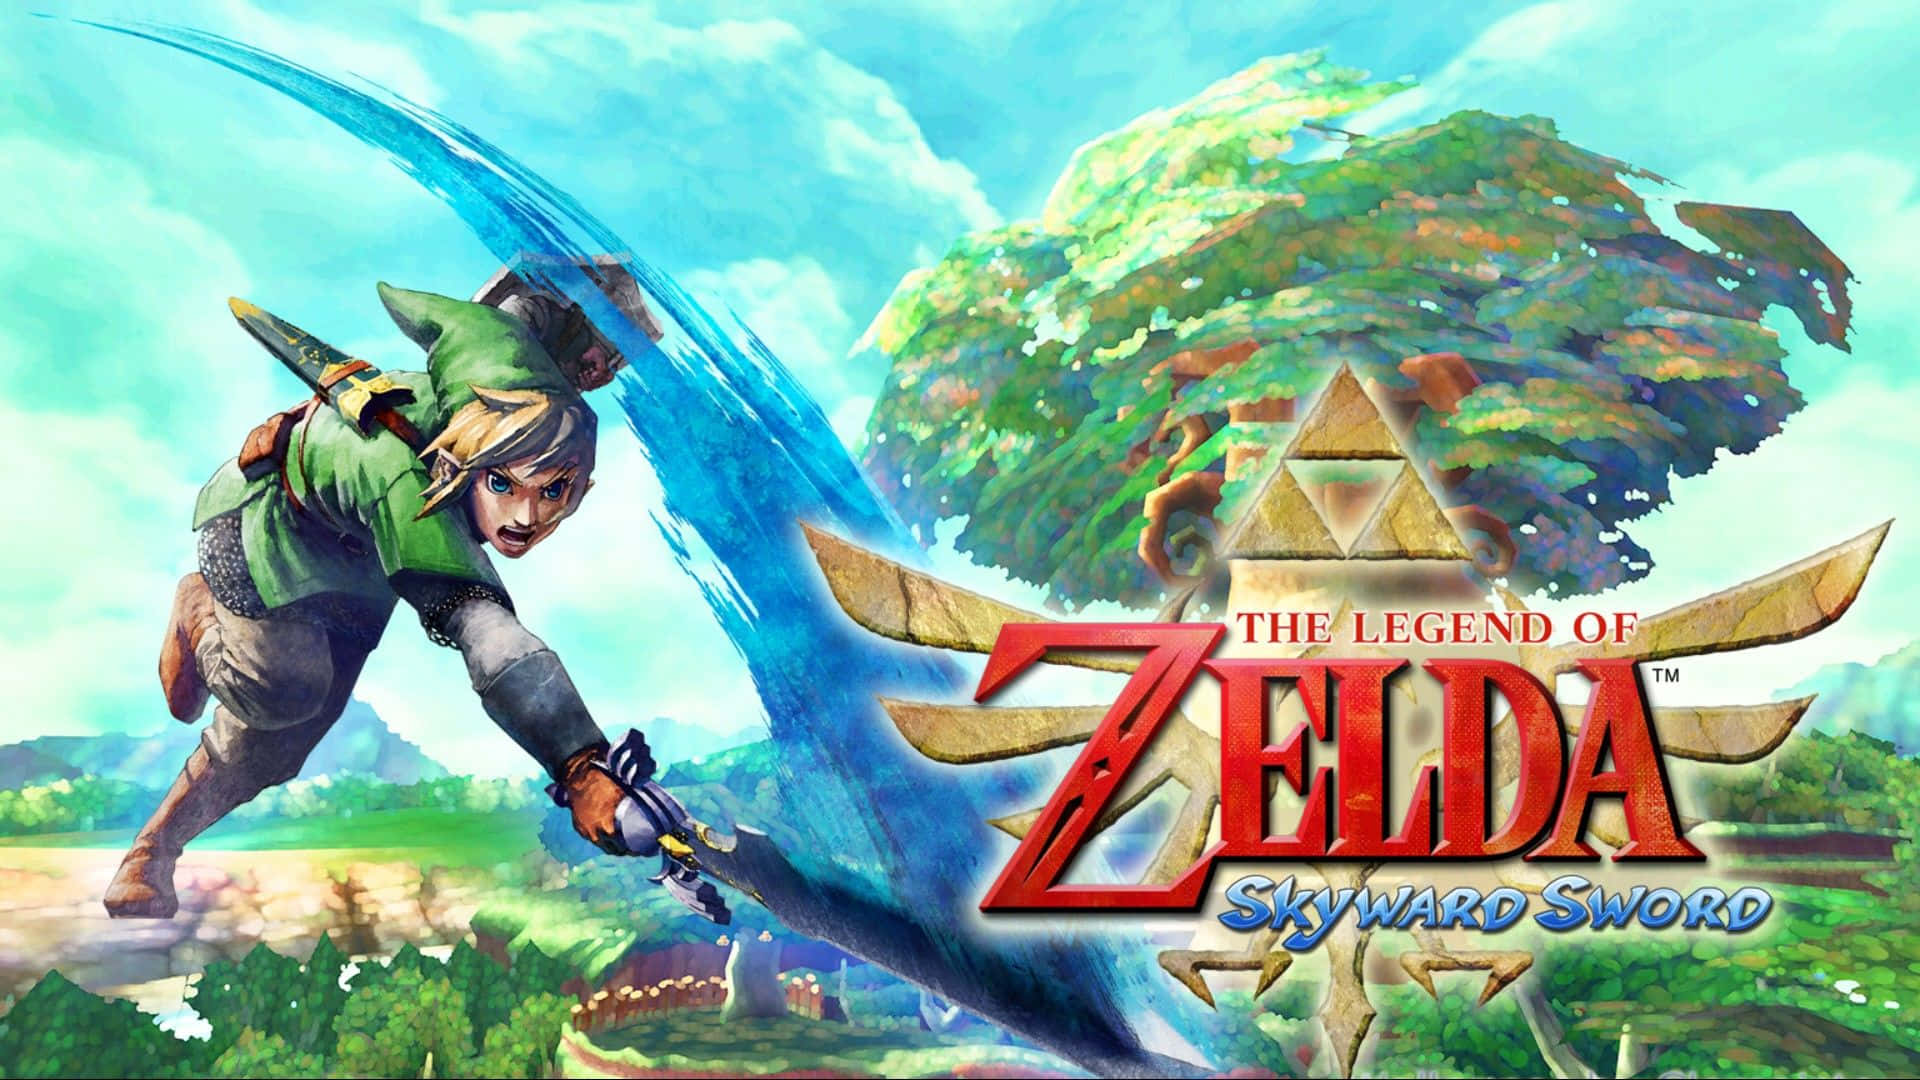 The Legend of Zelda: Skyward Sword Epic Adventure Wallpaper